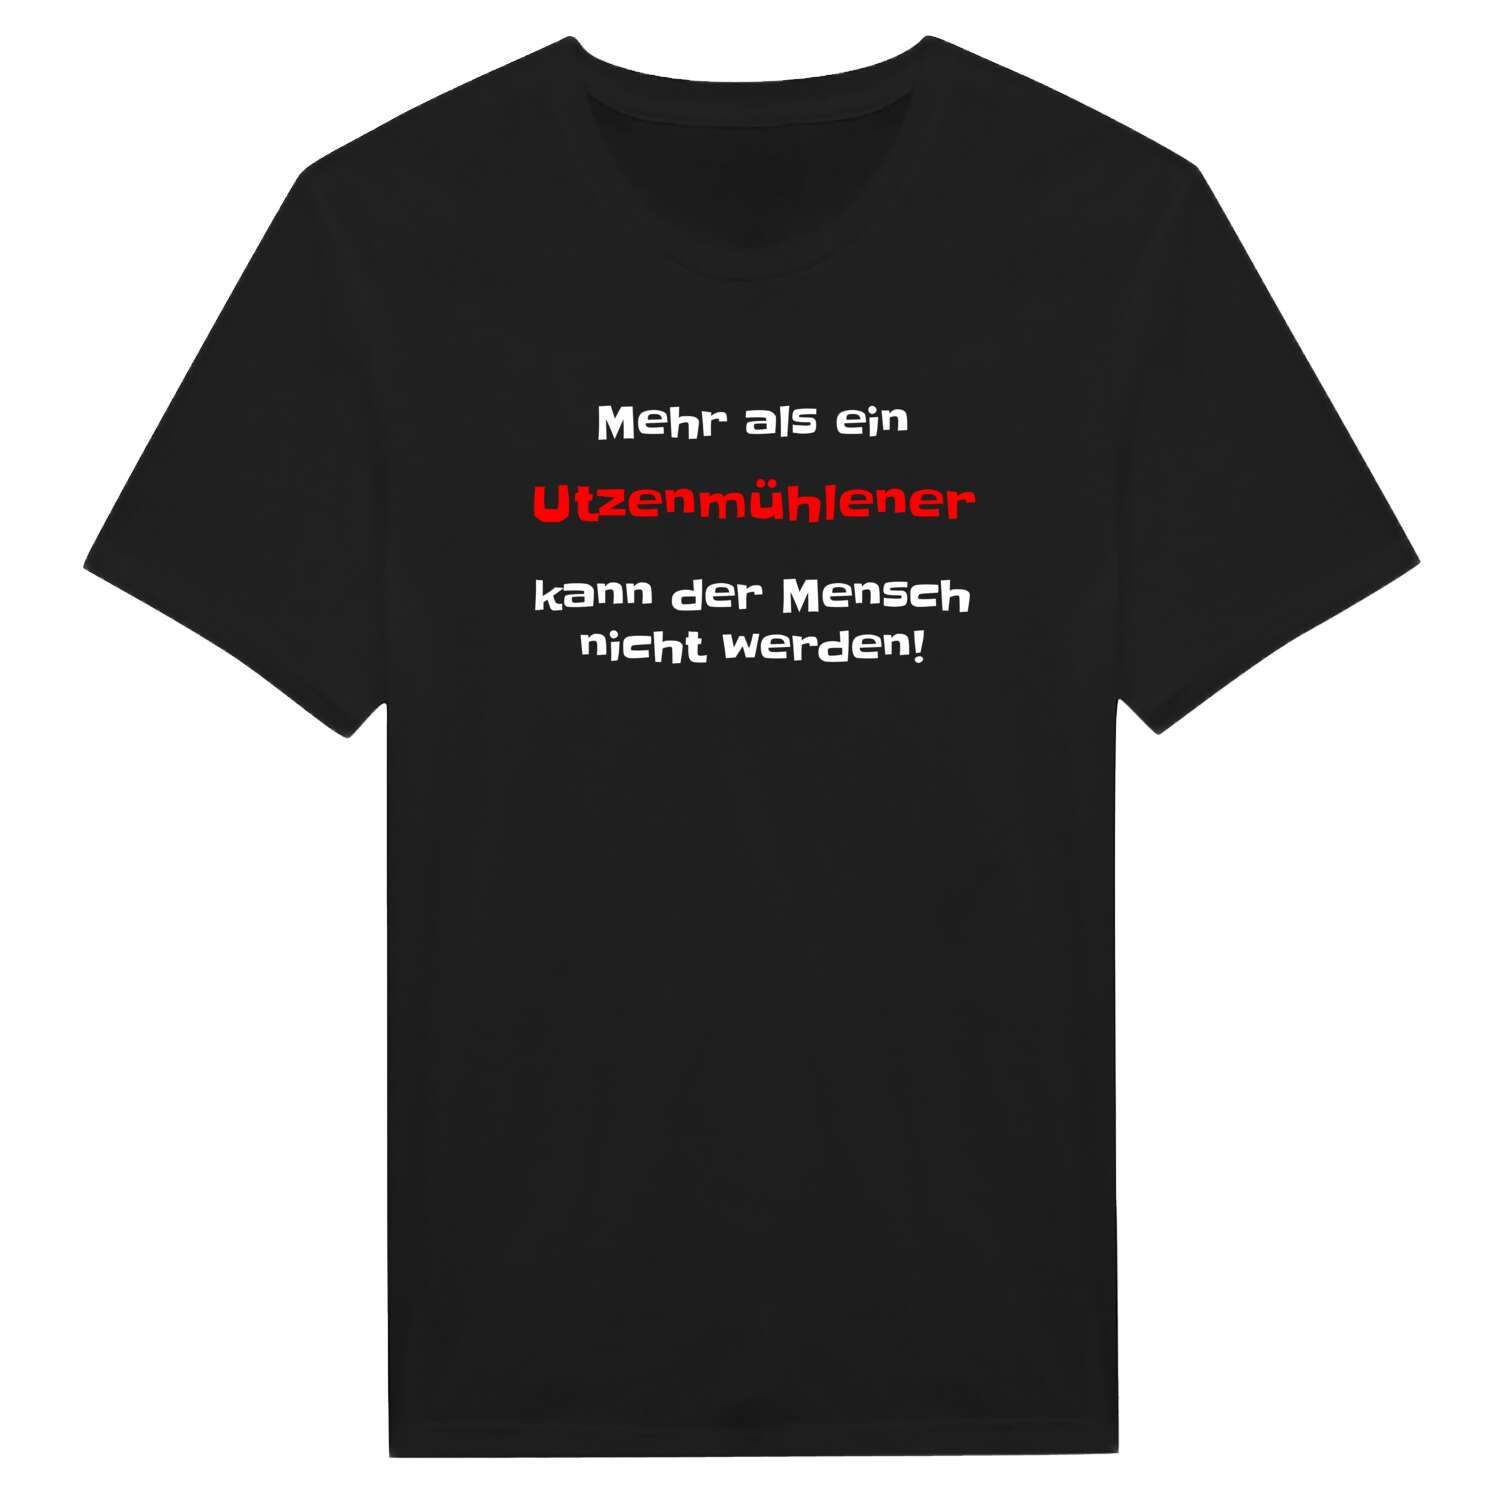 Utzenmühle T-Shirt »Mehr als ein«